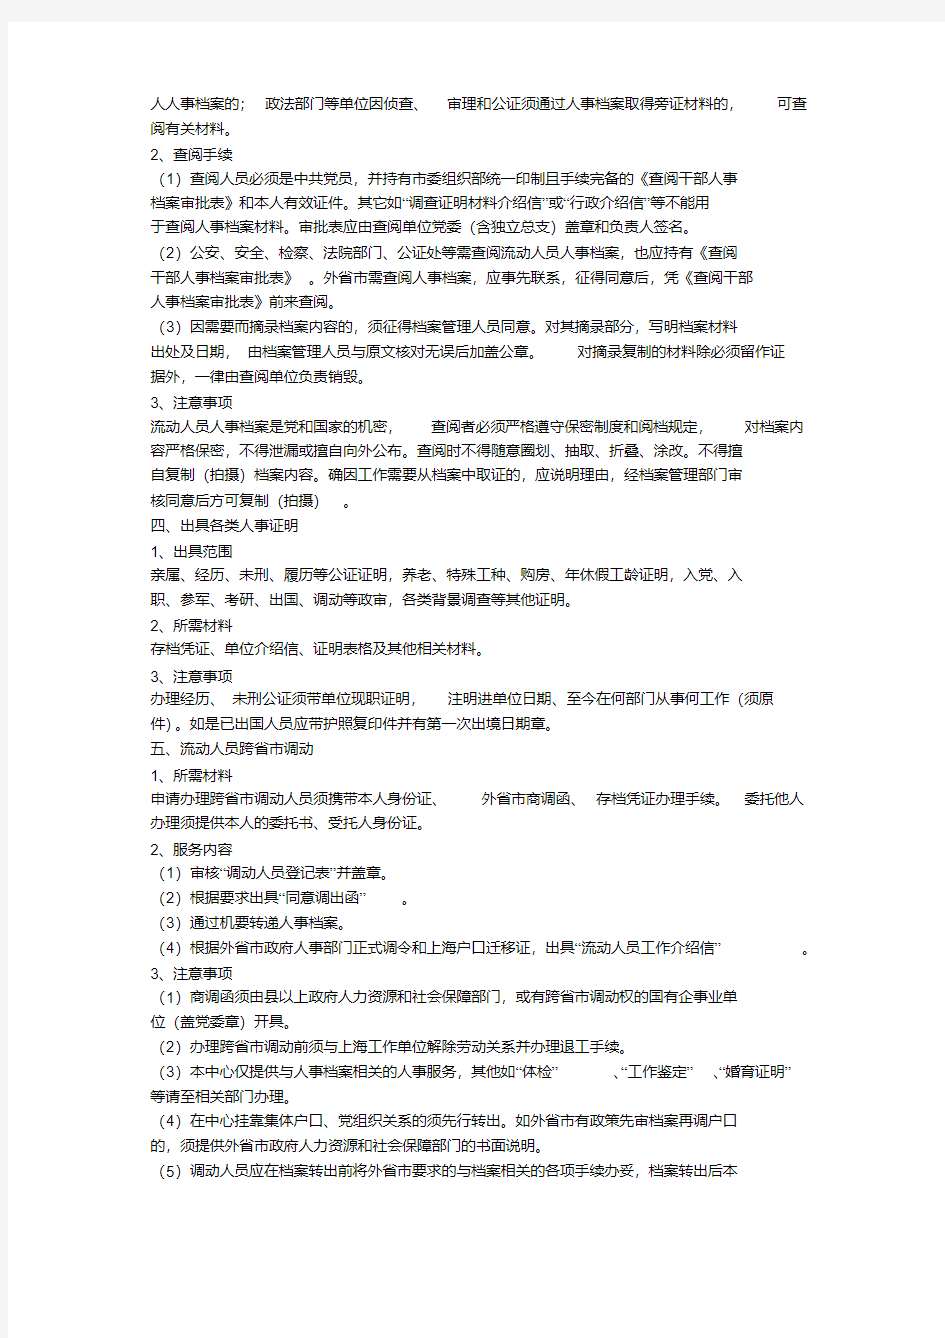 流动人员人事档案管理服务指南.pdf